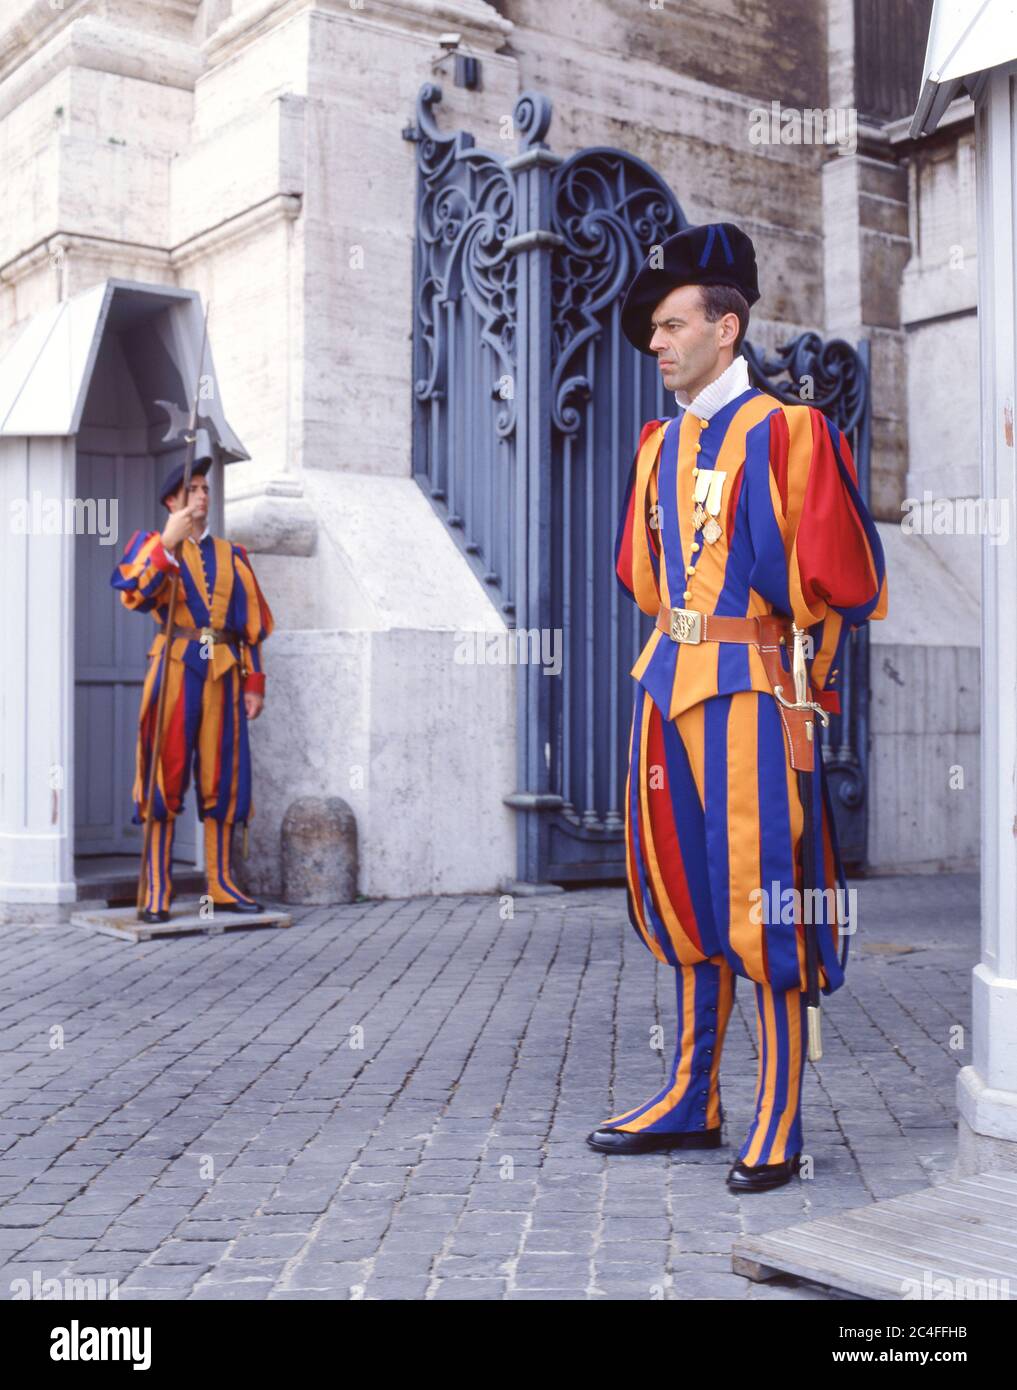 Schweizer Wachposten in traditioneller Uniform außerhalb der Vatikanstadt, des Petersplatzes, Rom (Roma), Latium, Italien Stockfoto